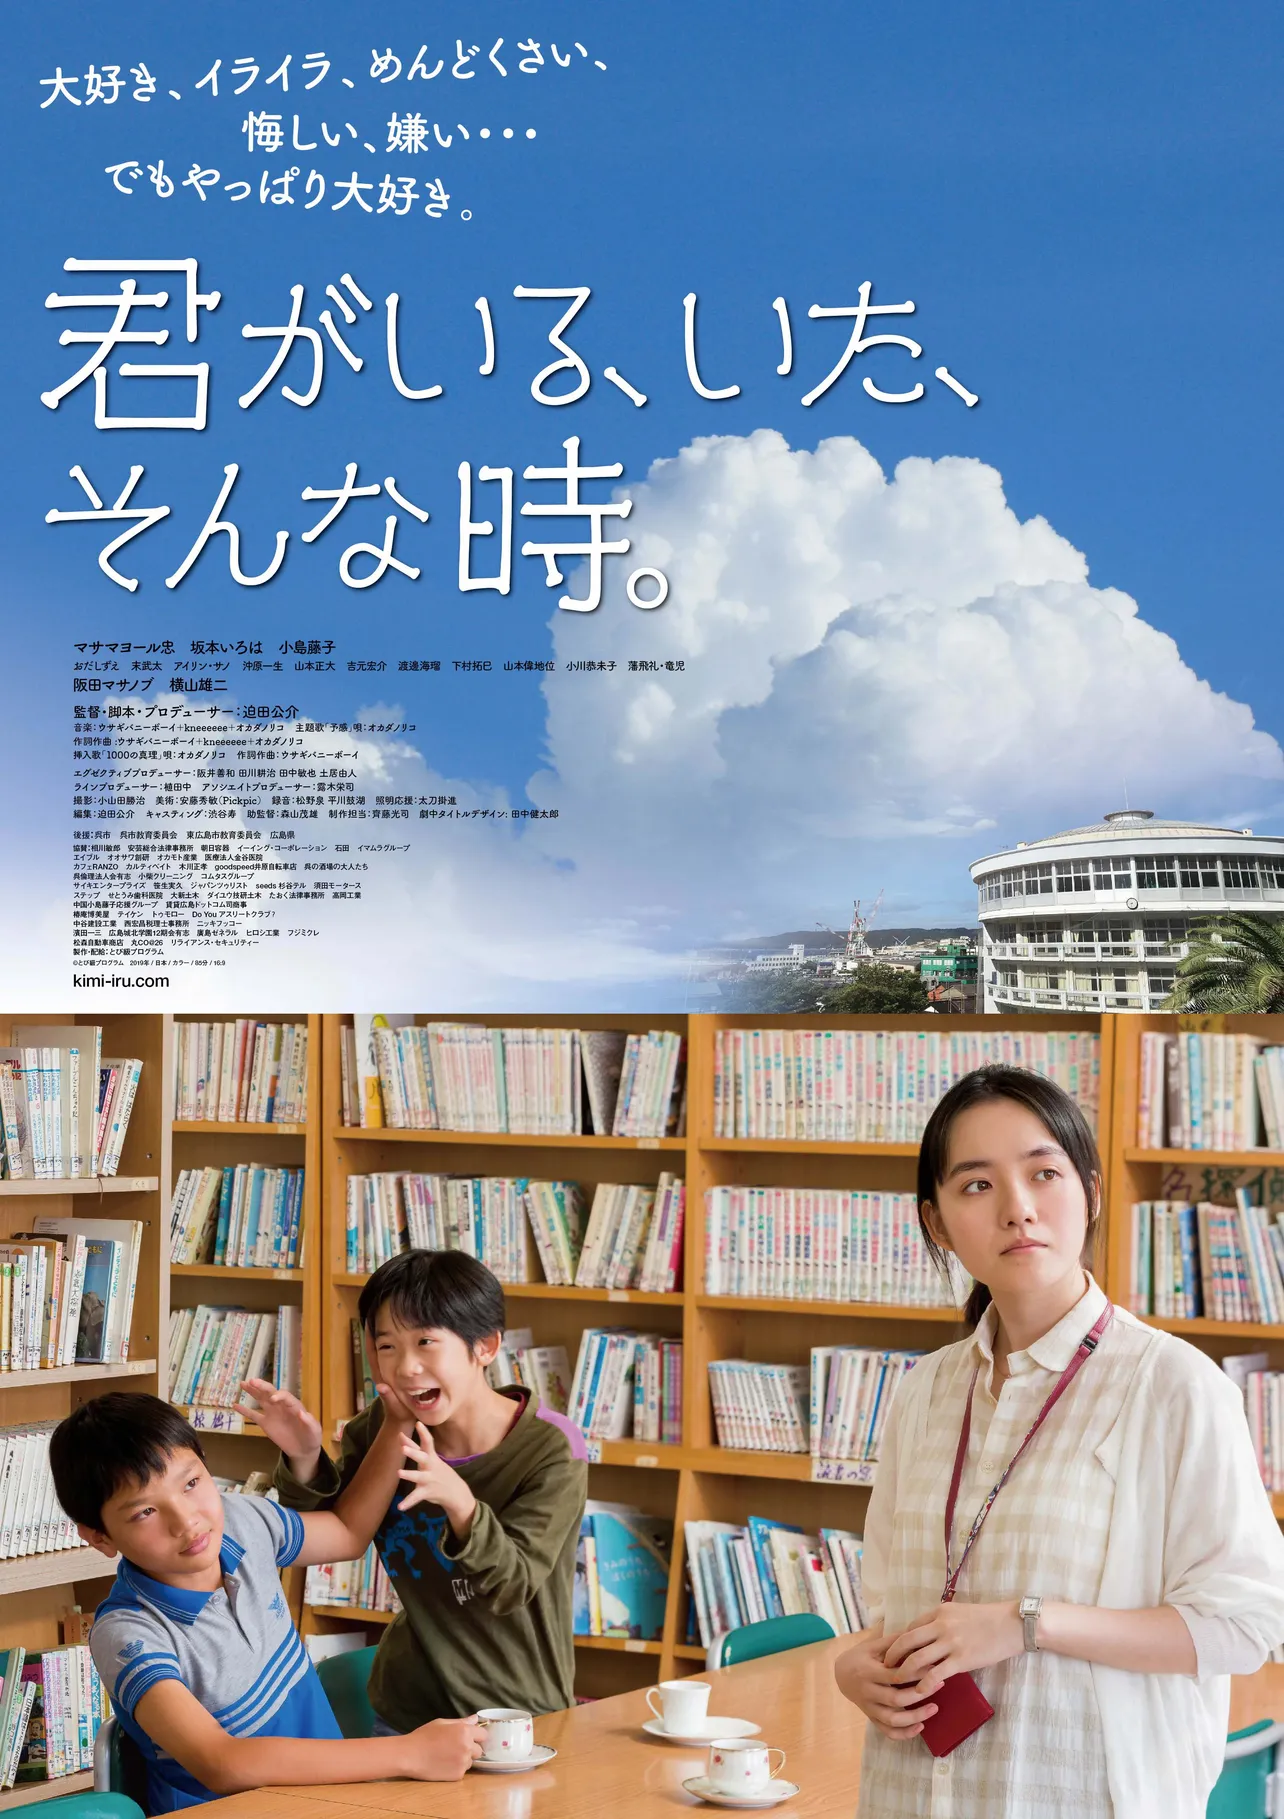 映画「君がいる、いた、そんな時。」は6月13日(土)より新宿K's cinemaほか全国順次ロードショー